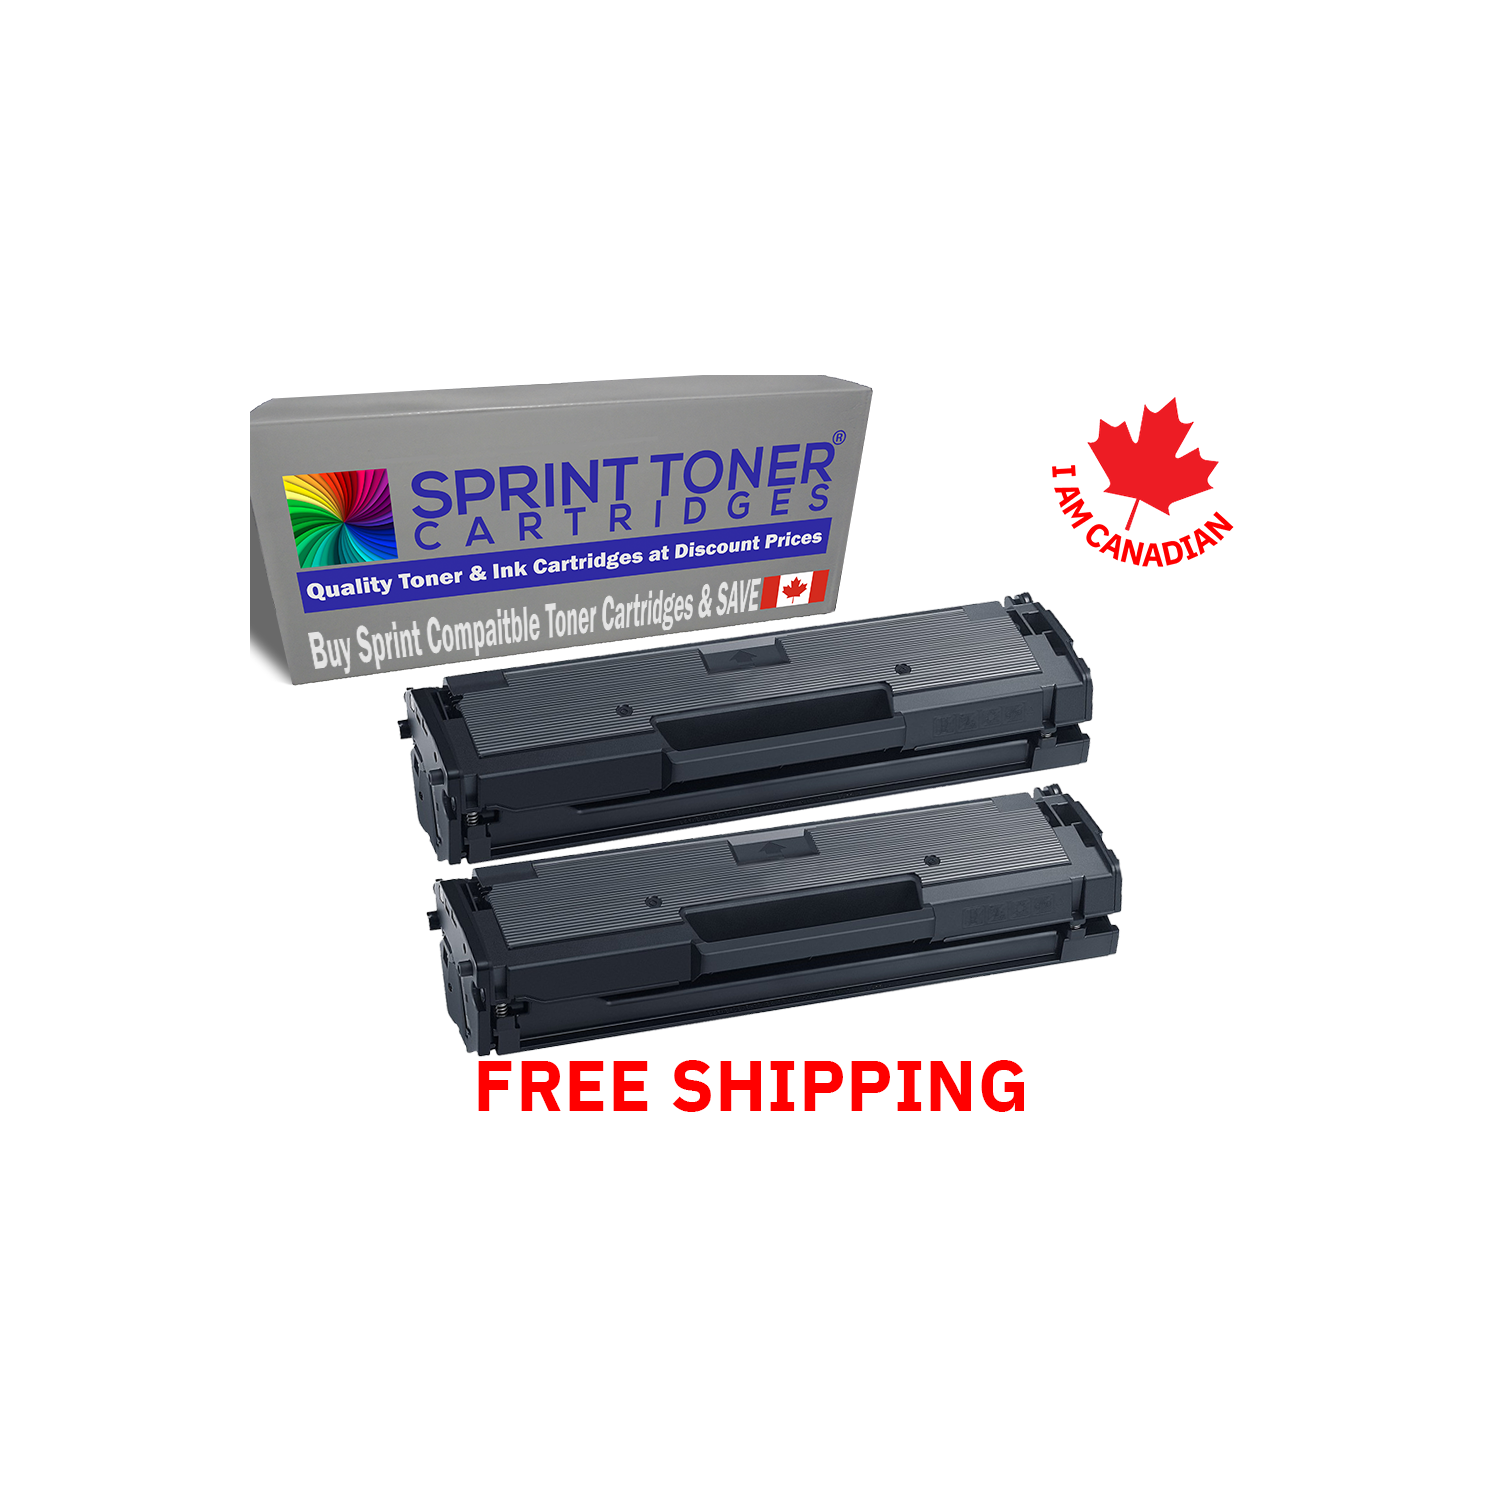 Twin Pack Compatible with Samsung MLTD-111S , MLTD111S Black Toner Cartridge Xpress Printers. SL-M2020W, SL-M2070W, SL-M2070FW